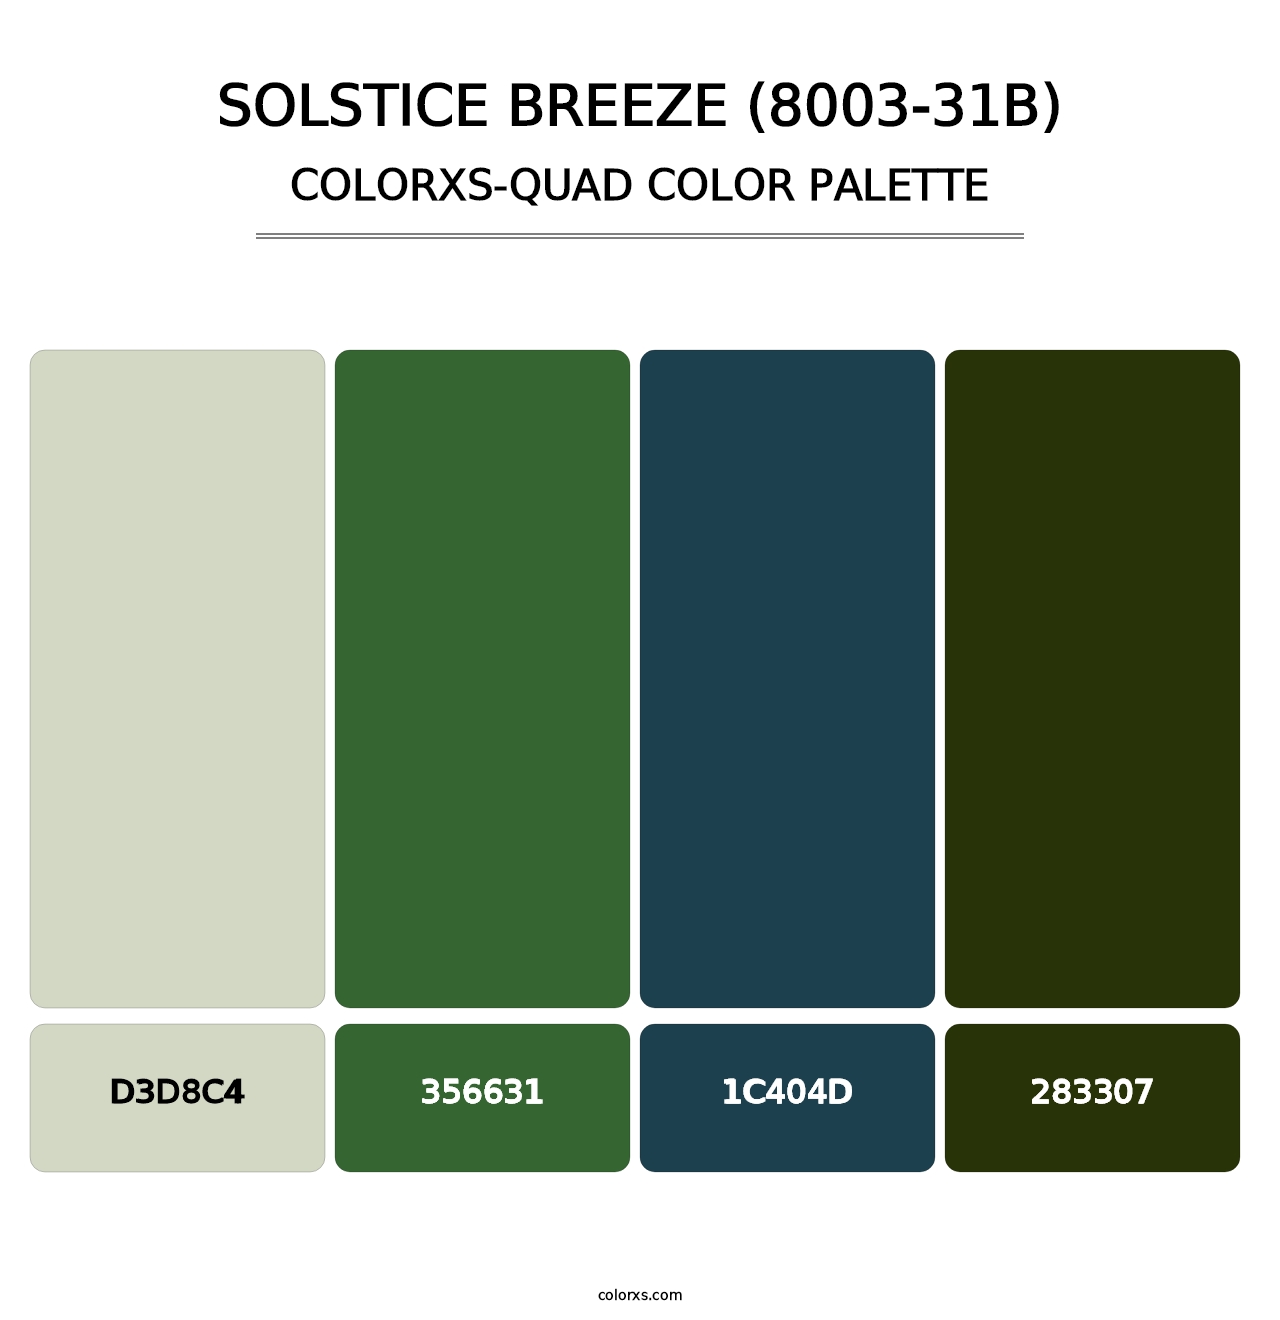 Solstice Breeze (8003-31B) - Colorxs Quad Palette